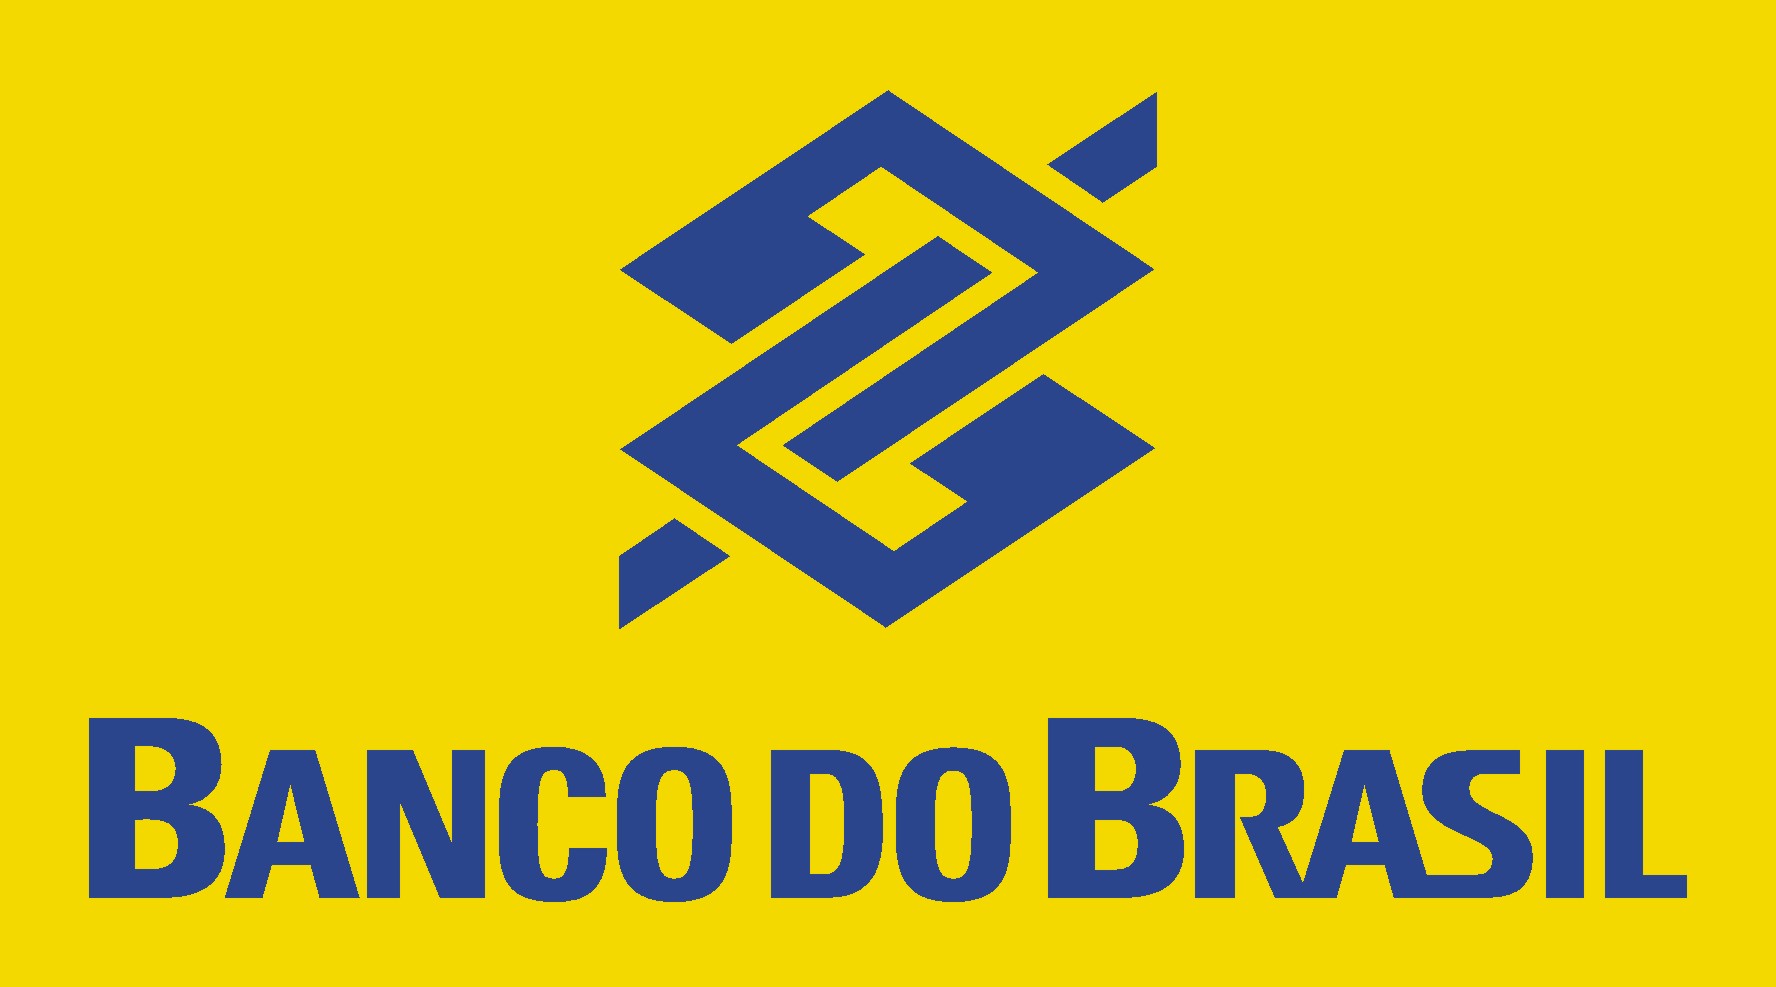 Banco do Brasil Brand Logo